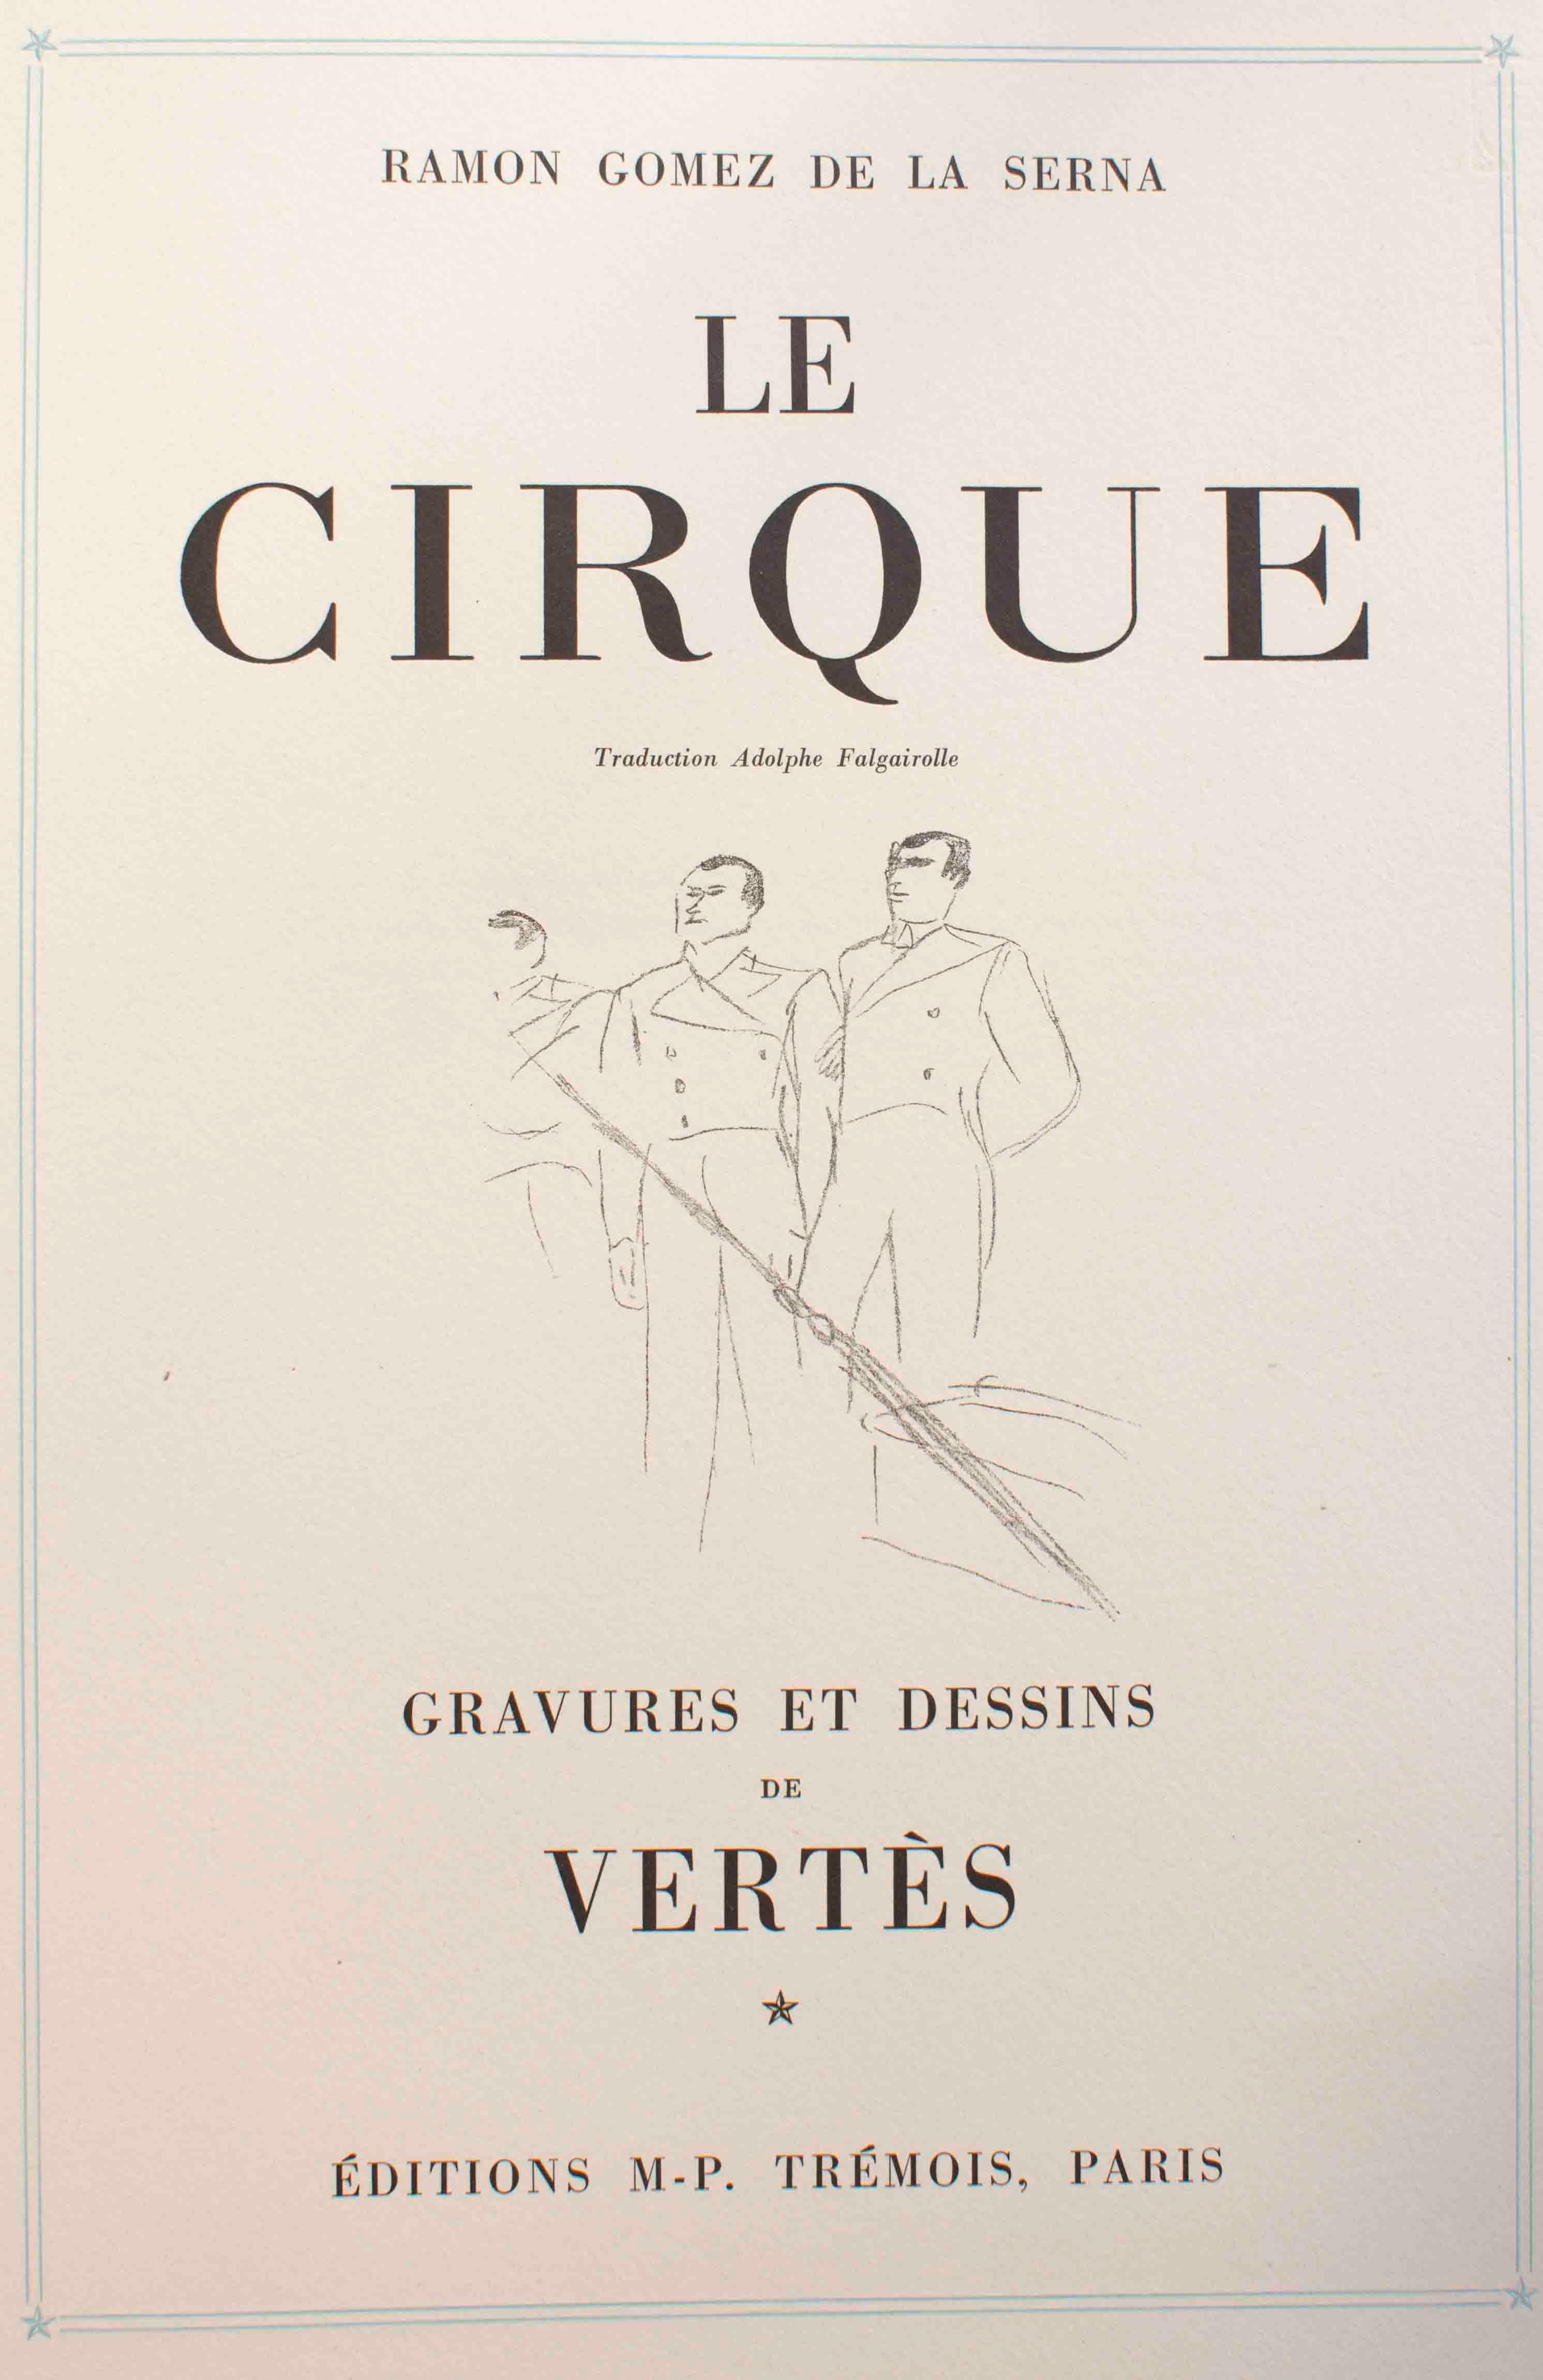 Le Cirque von Vertes und De la Serna ist eine Auflage von 103 Exemplaren mit 5 Original-Farbradierungen und zahlreichen Zeichnungen, die von Vertès in Lithographietechnik reproduziert wurden. Inklusive Softcover auf blauem Papier mit vergoldeten